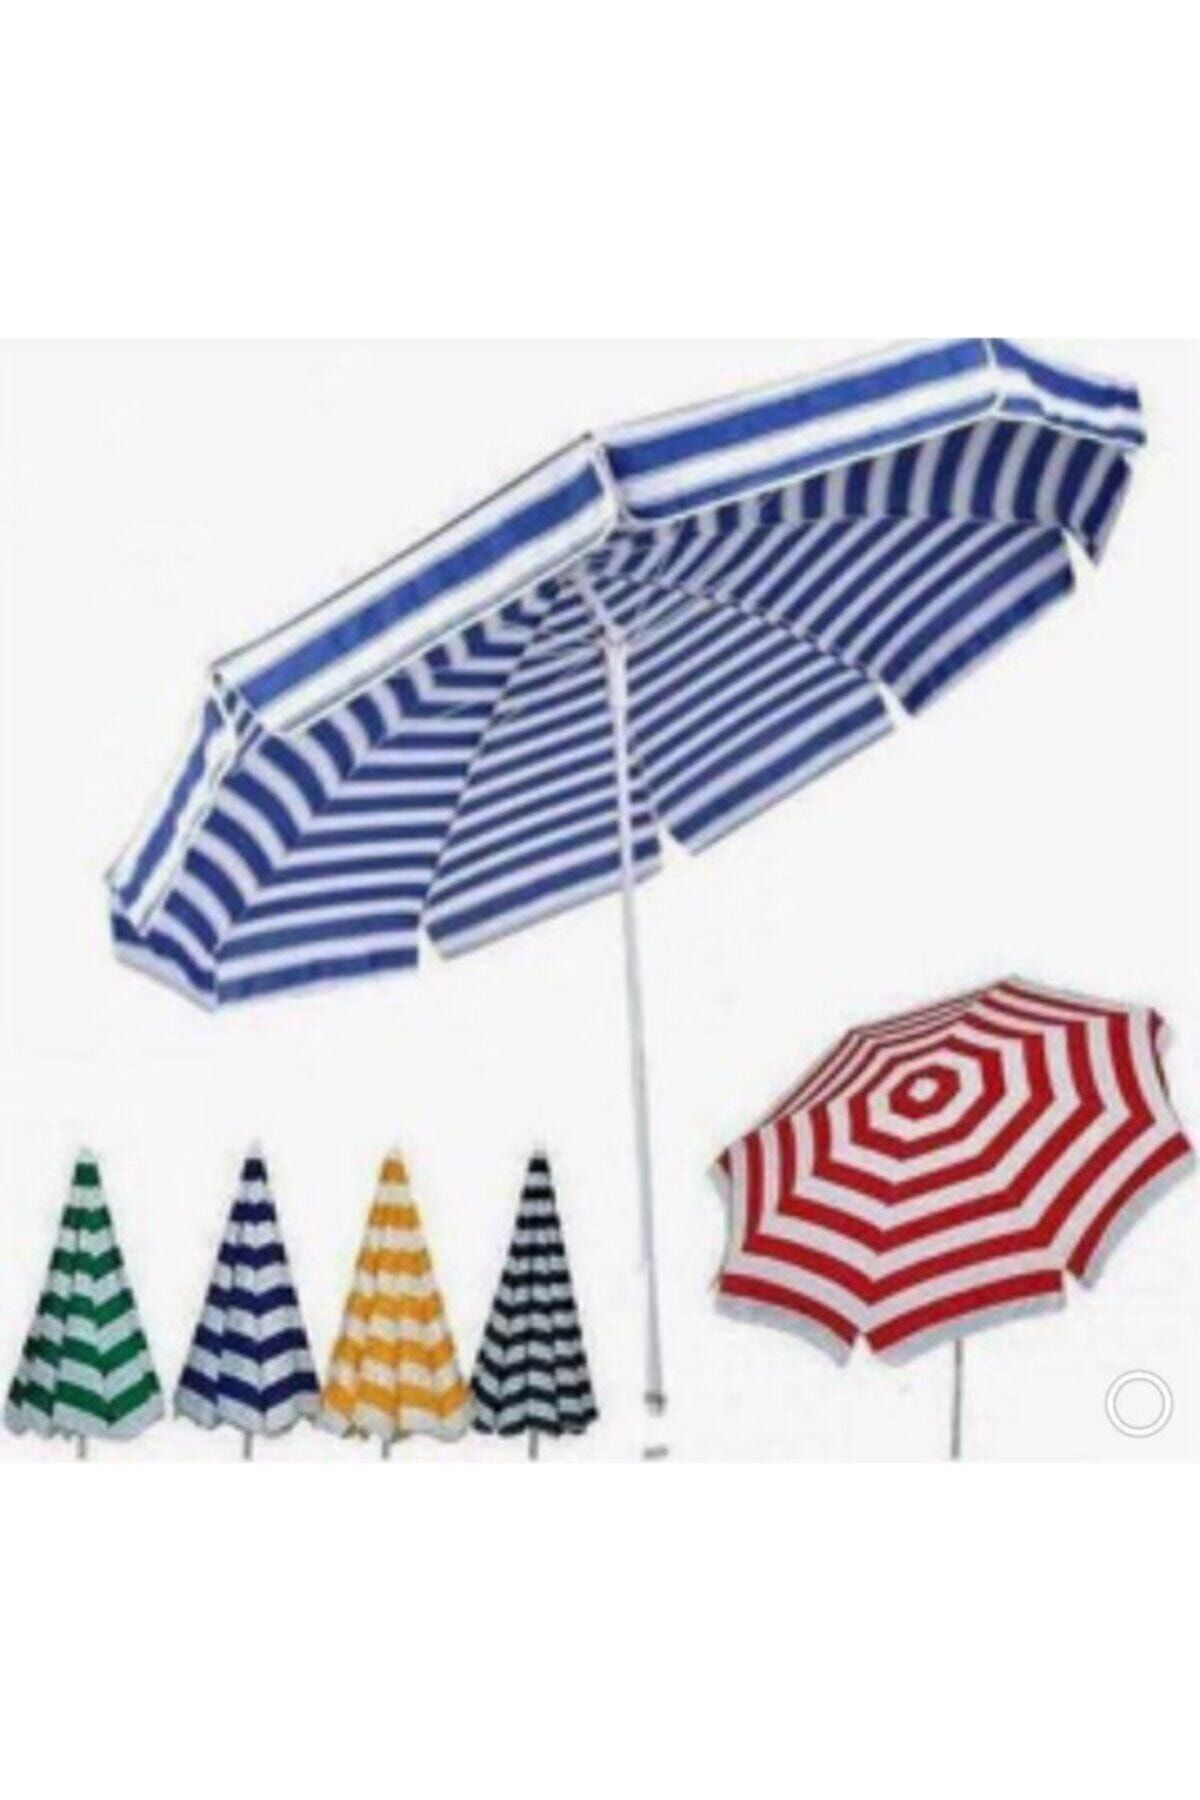 And Outdoor Plaj Ve Havuz Şemsiyesi Polyester 2m'lik Polyester Şemsiye